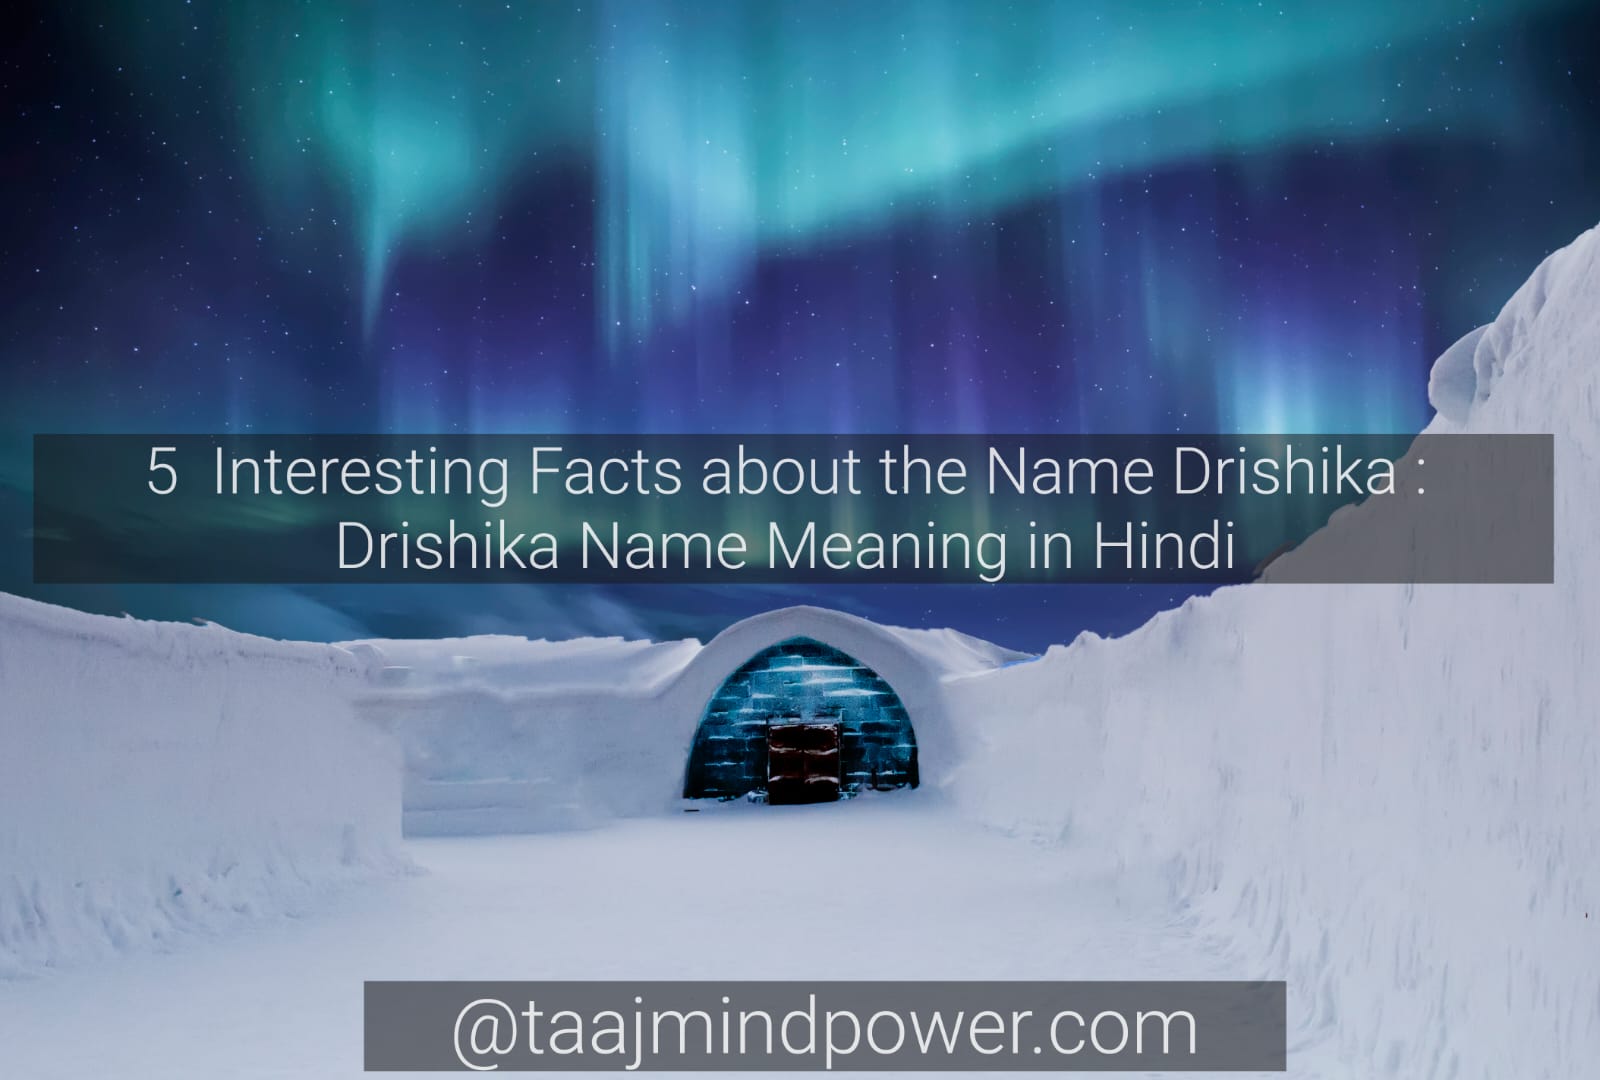 Drishika Name Meaning in Hindi